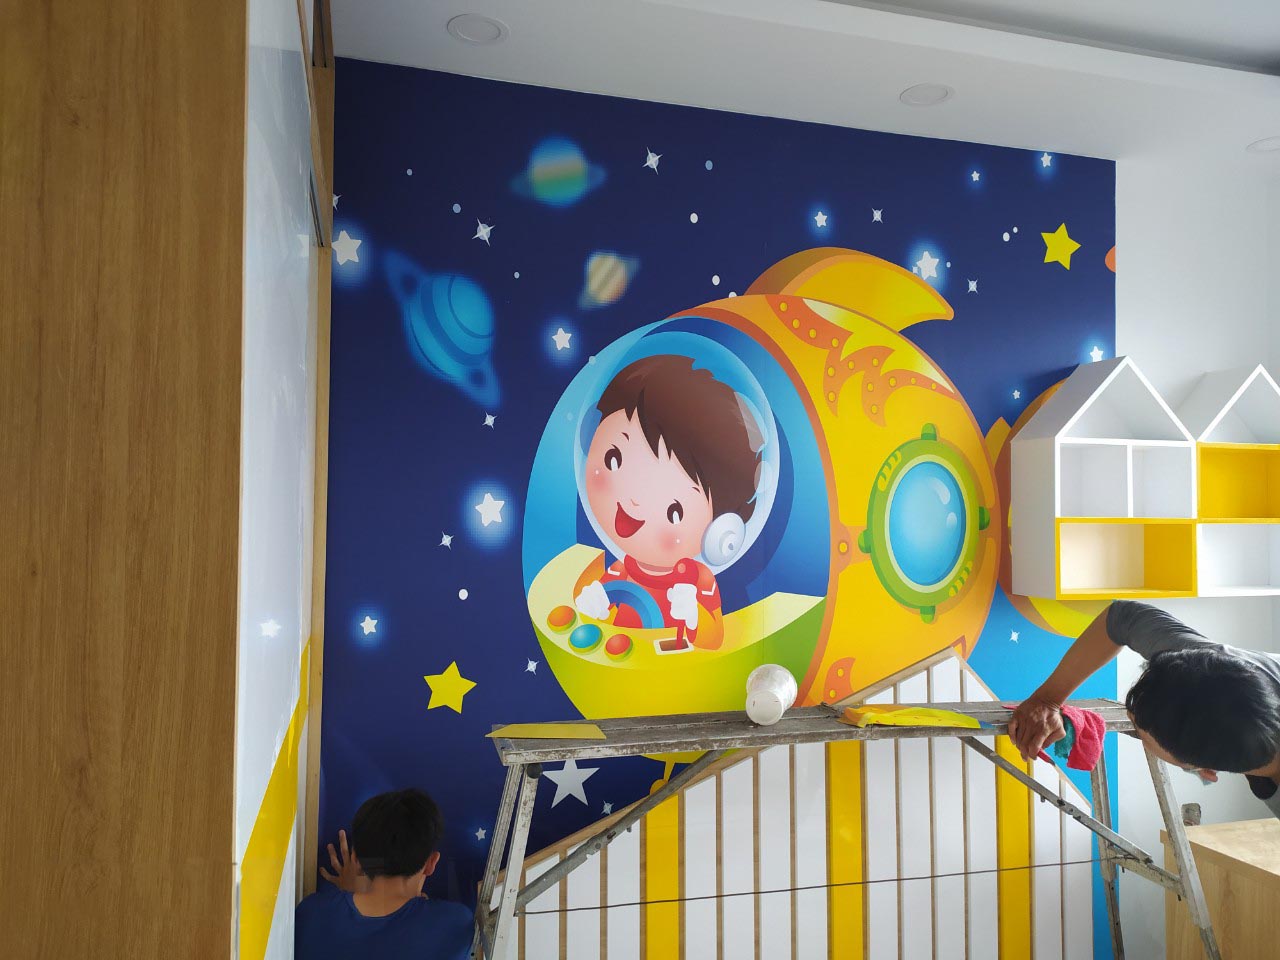 Tranh dán tường 3D phòng trẻ em te25, với các hình ảnh ngộ nghĩnh giúp tăng óc sáng tạo và trí tưởng cho bé